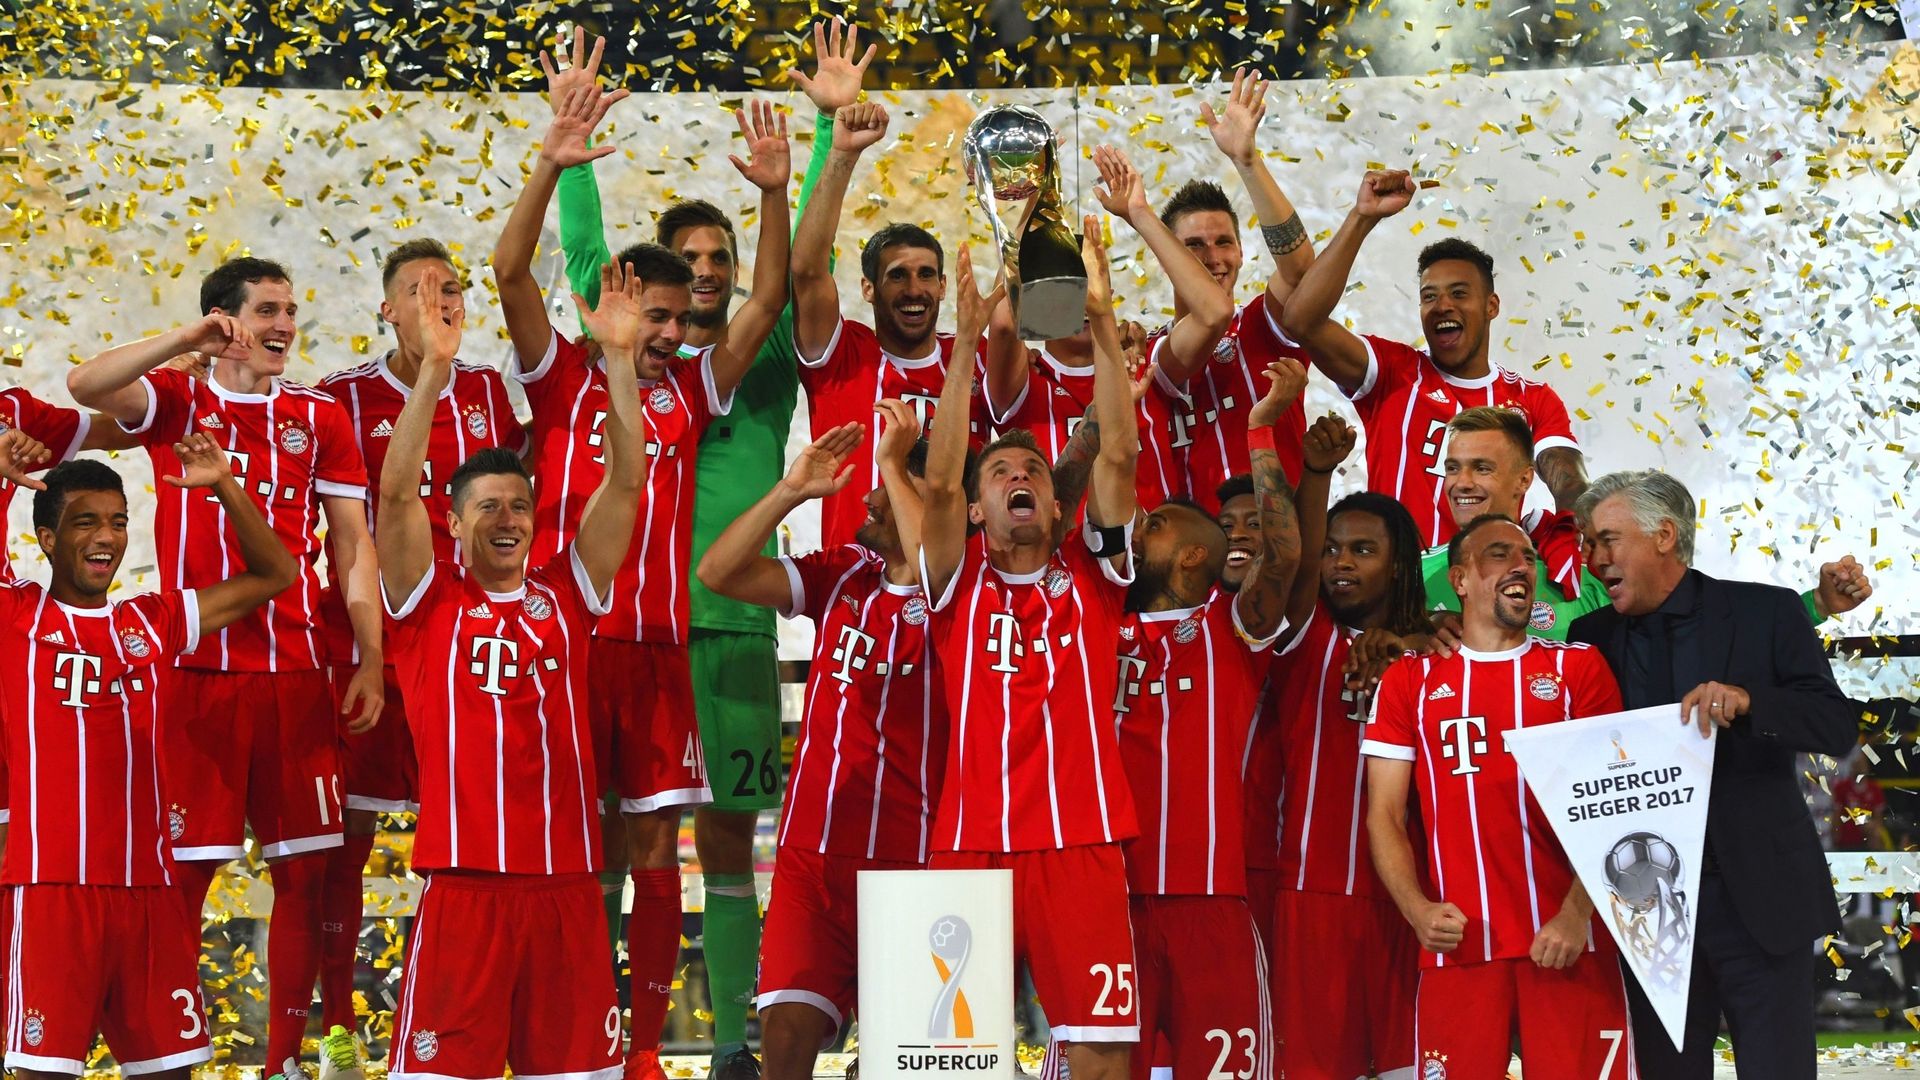 Le Bayern se reprend et remporte la Supercoupe d'Allemagne face à Dortmund - rtbf.be